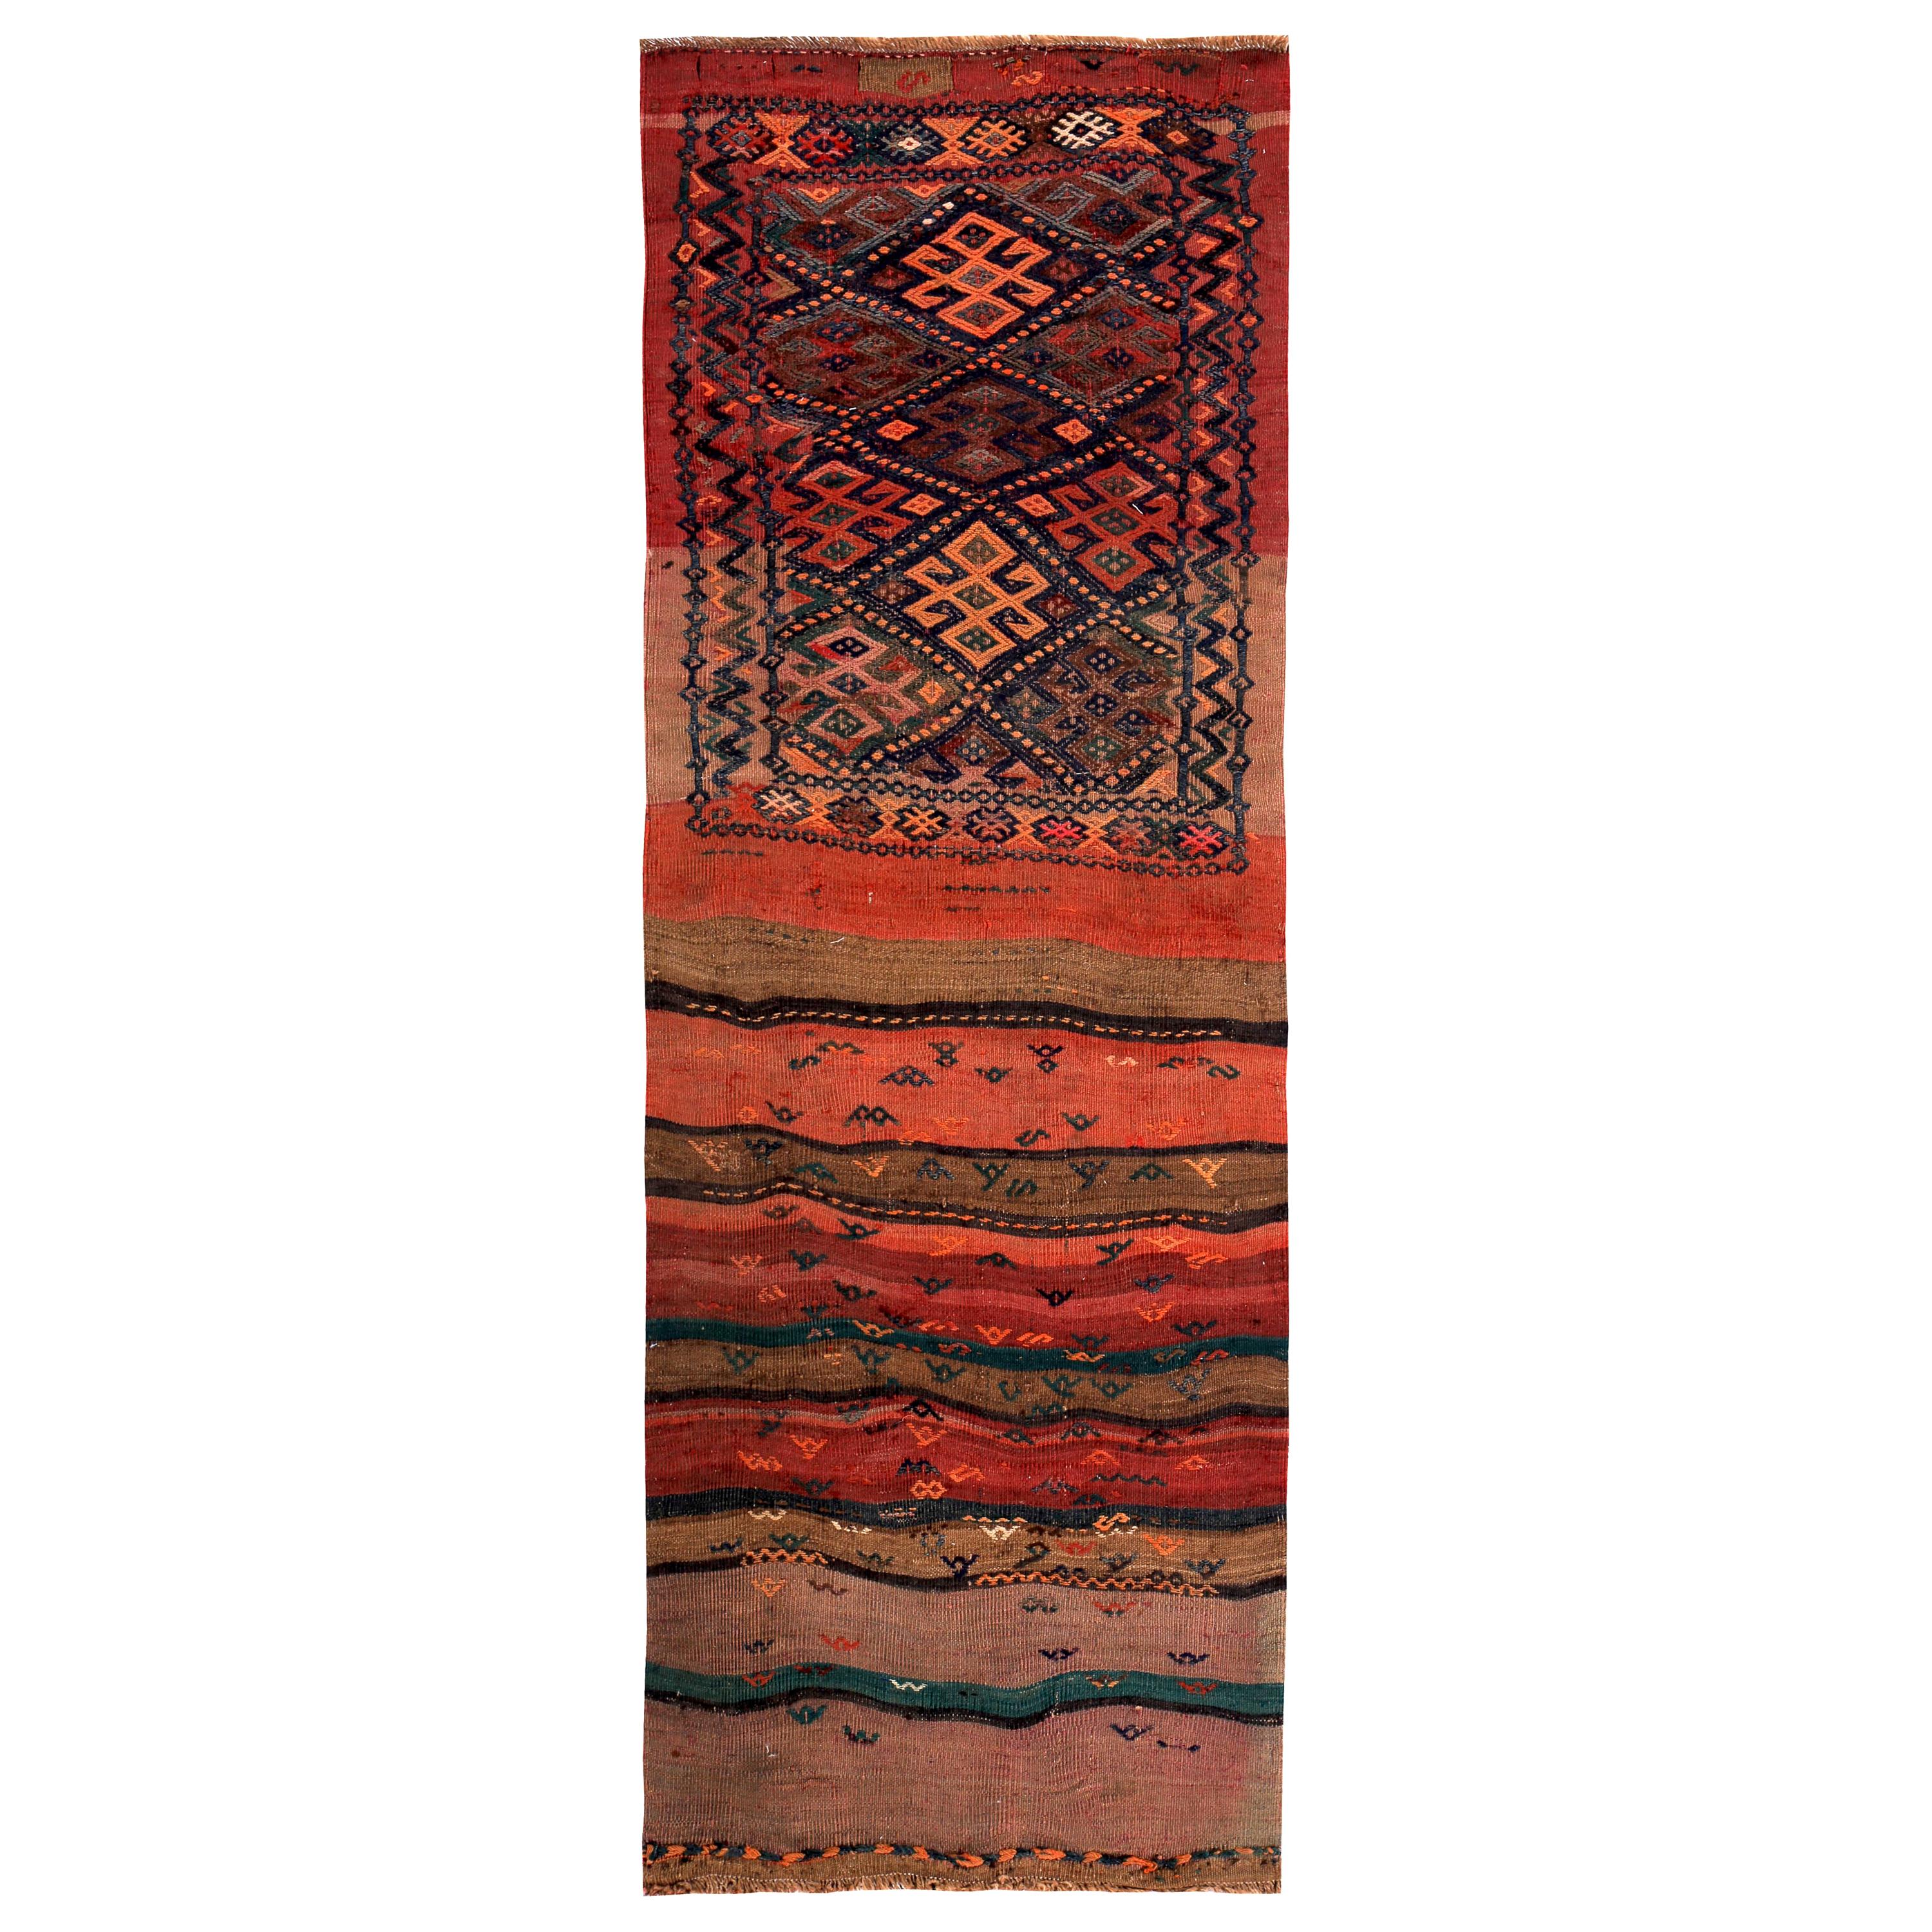 Türkischer Kelim-Teppich in Rot, Orange und Stammesstreifen in Grün und Braun